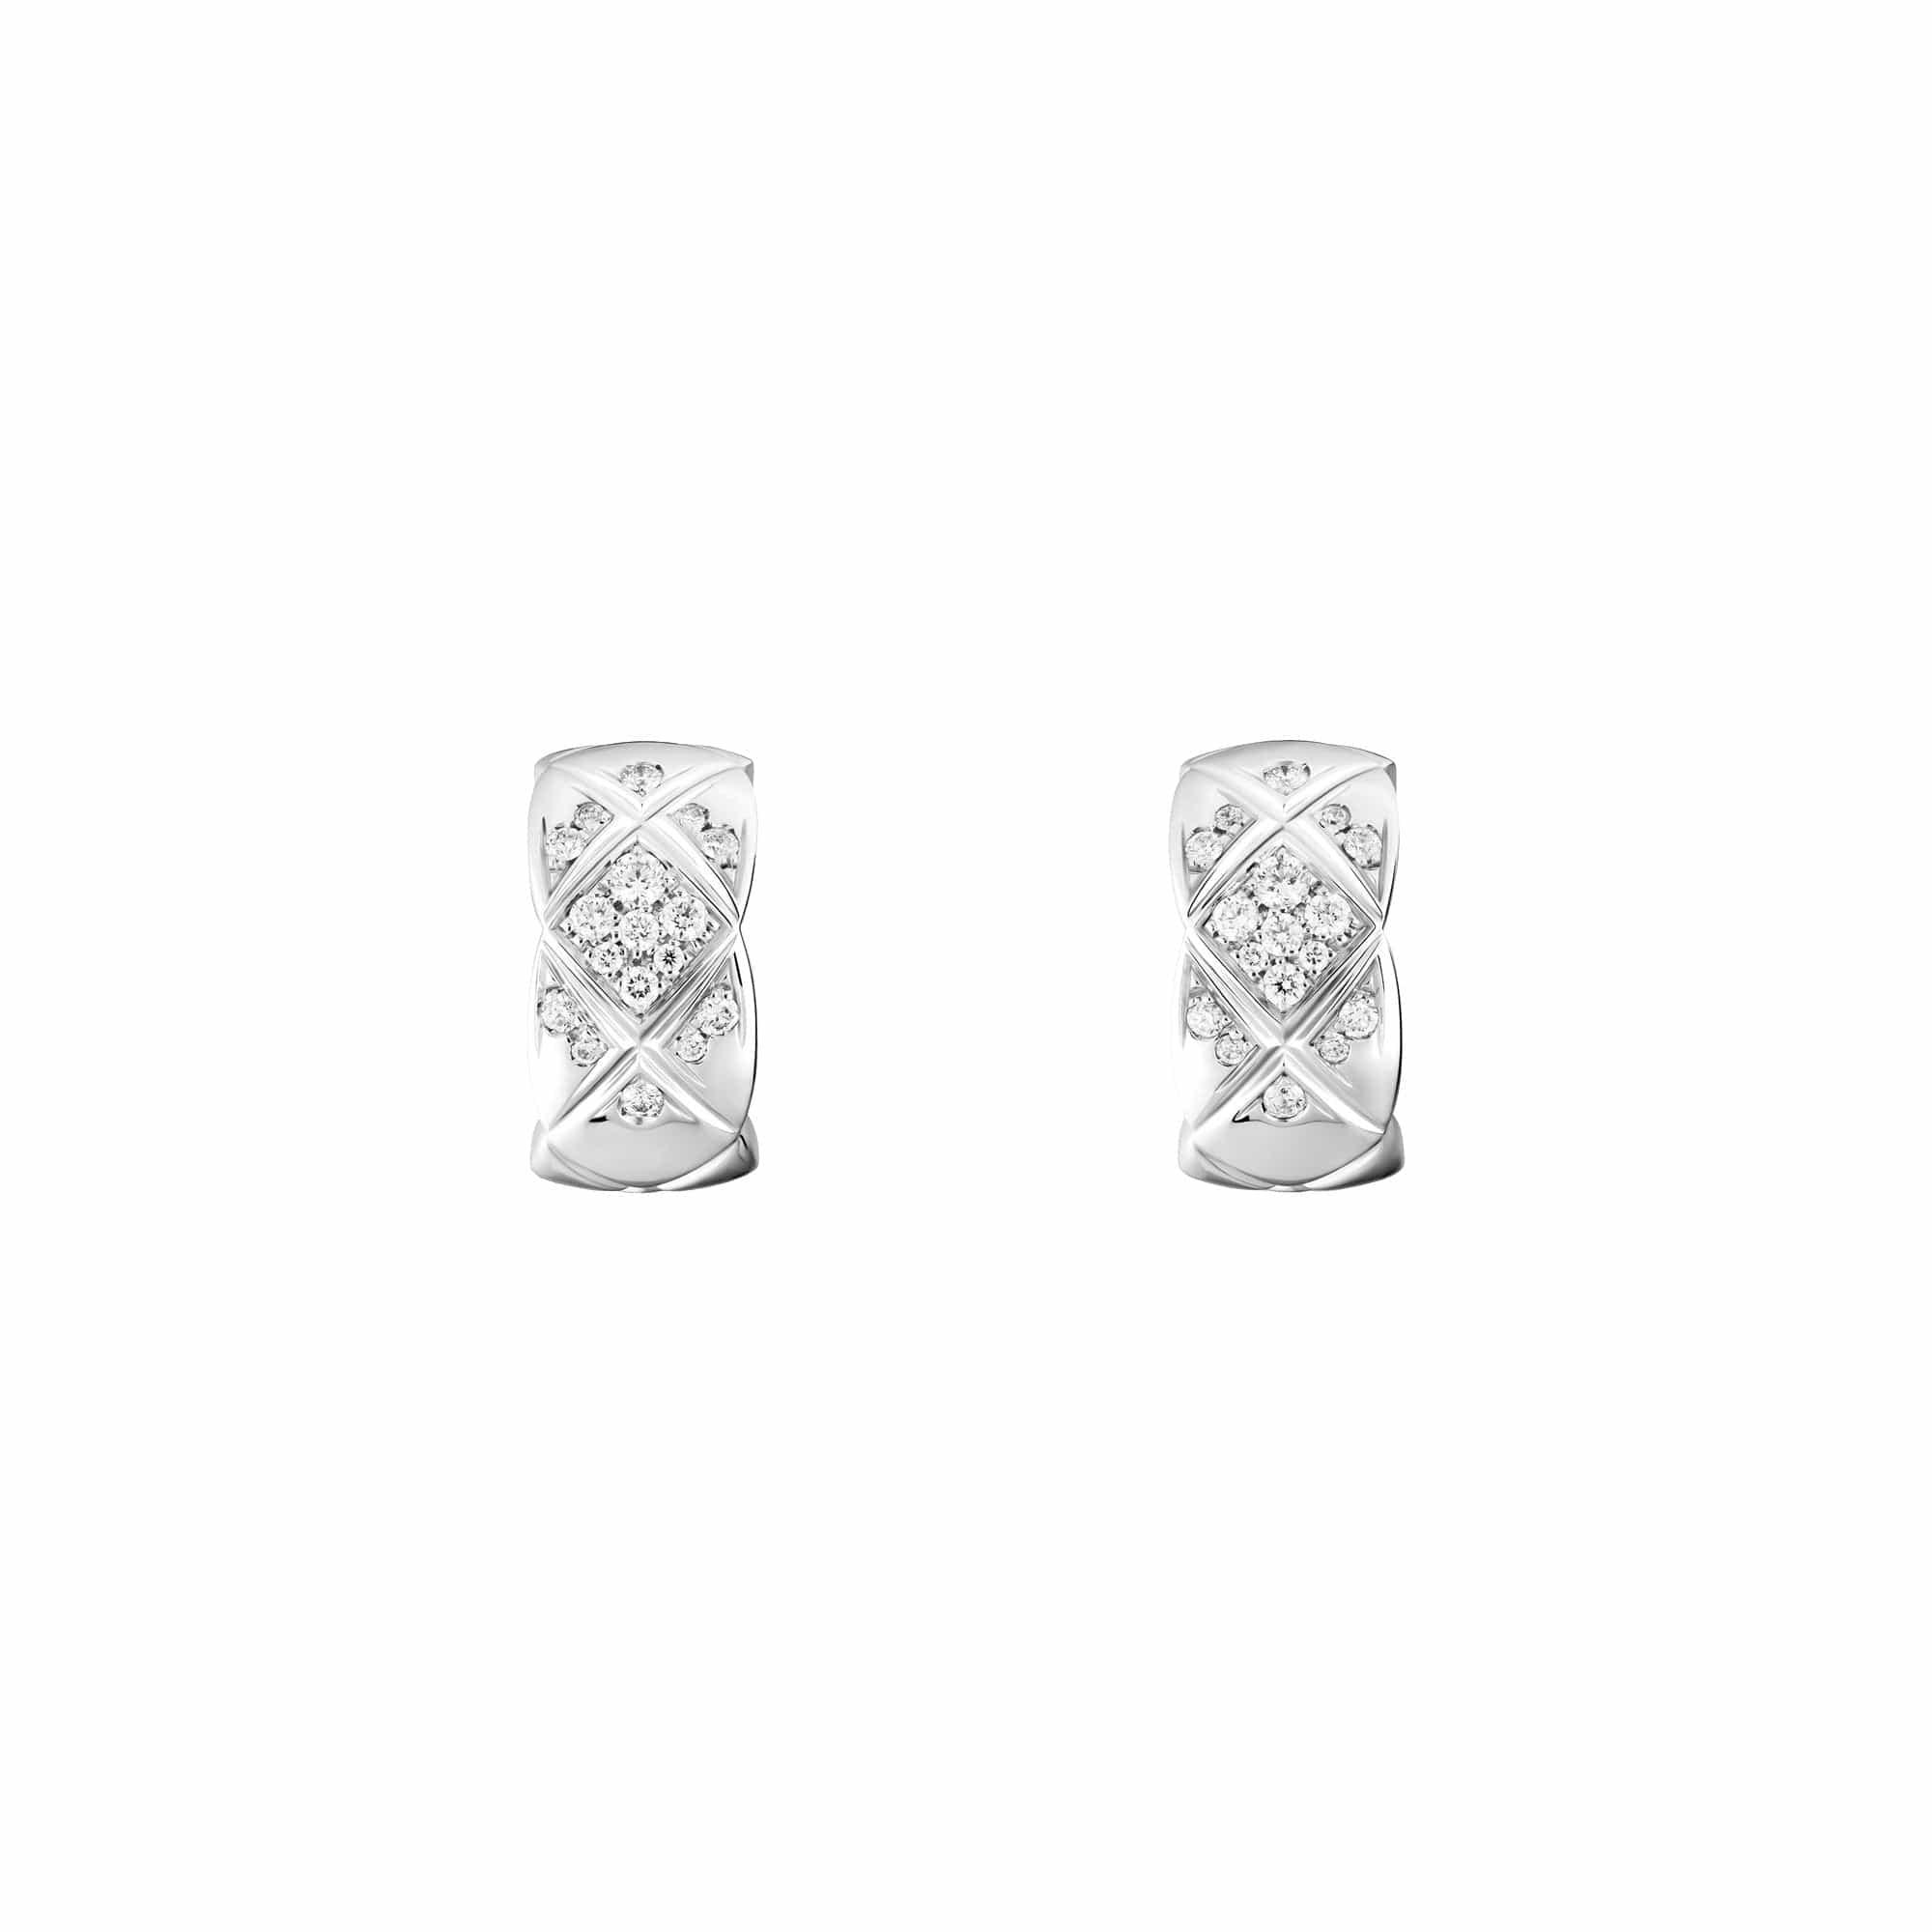 Cc earrings Chanel Silver in Metal - 38946771